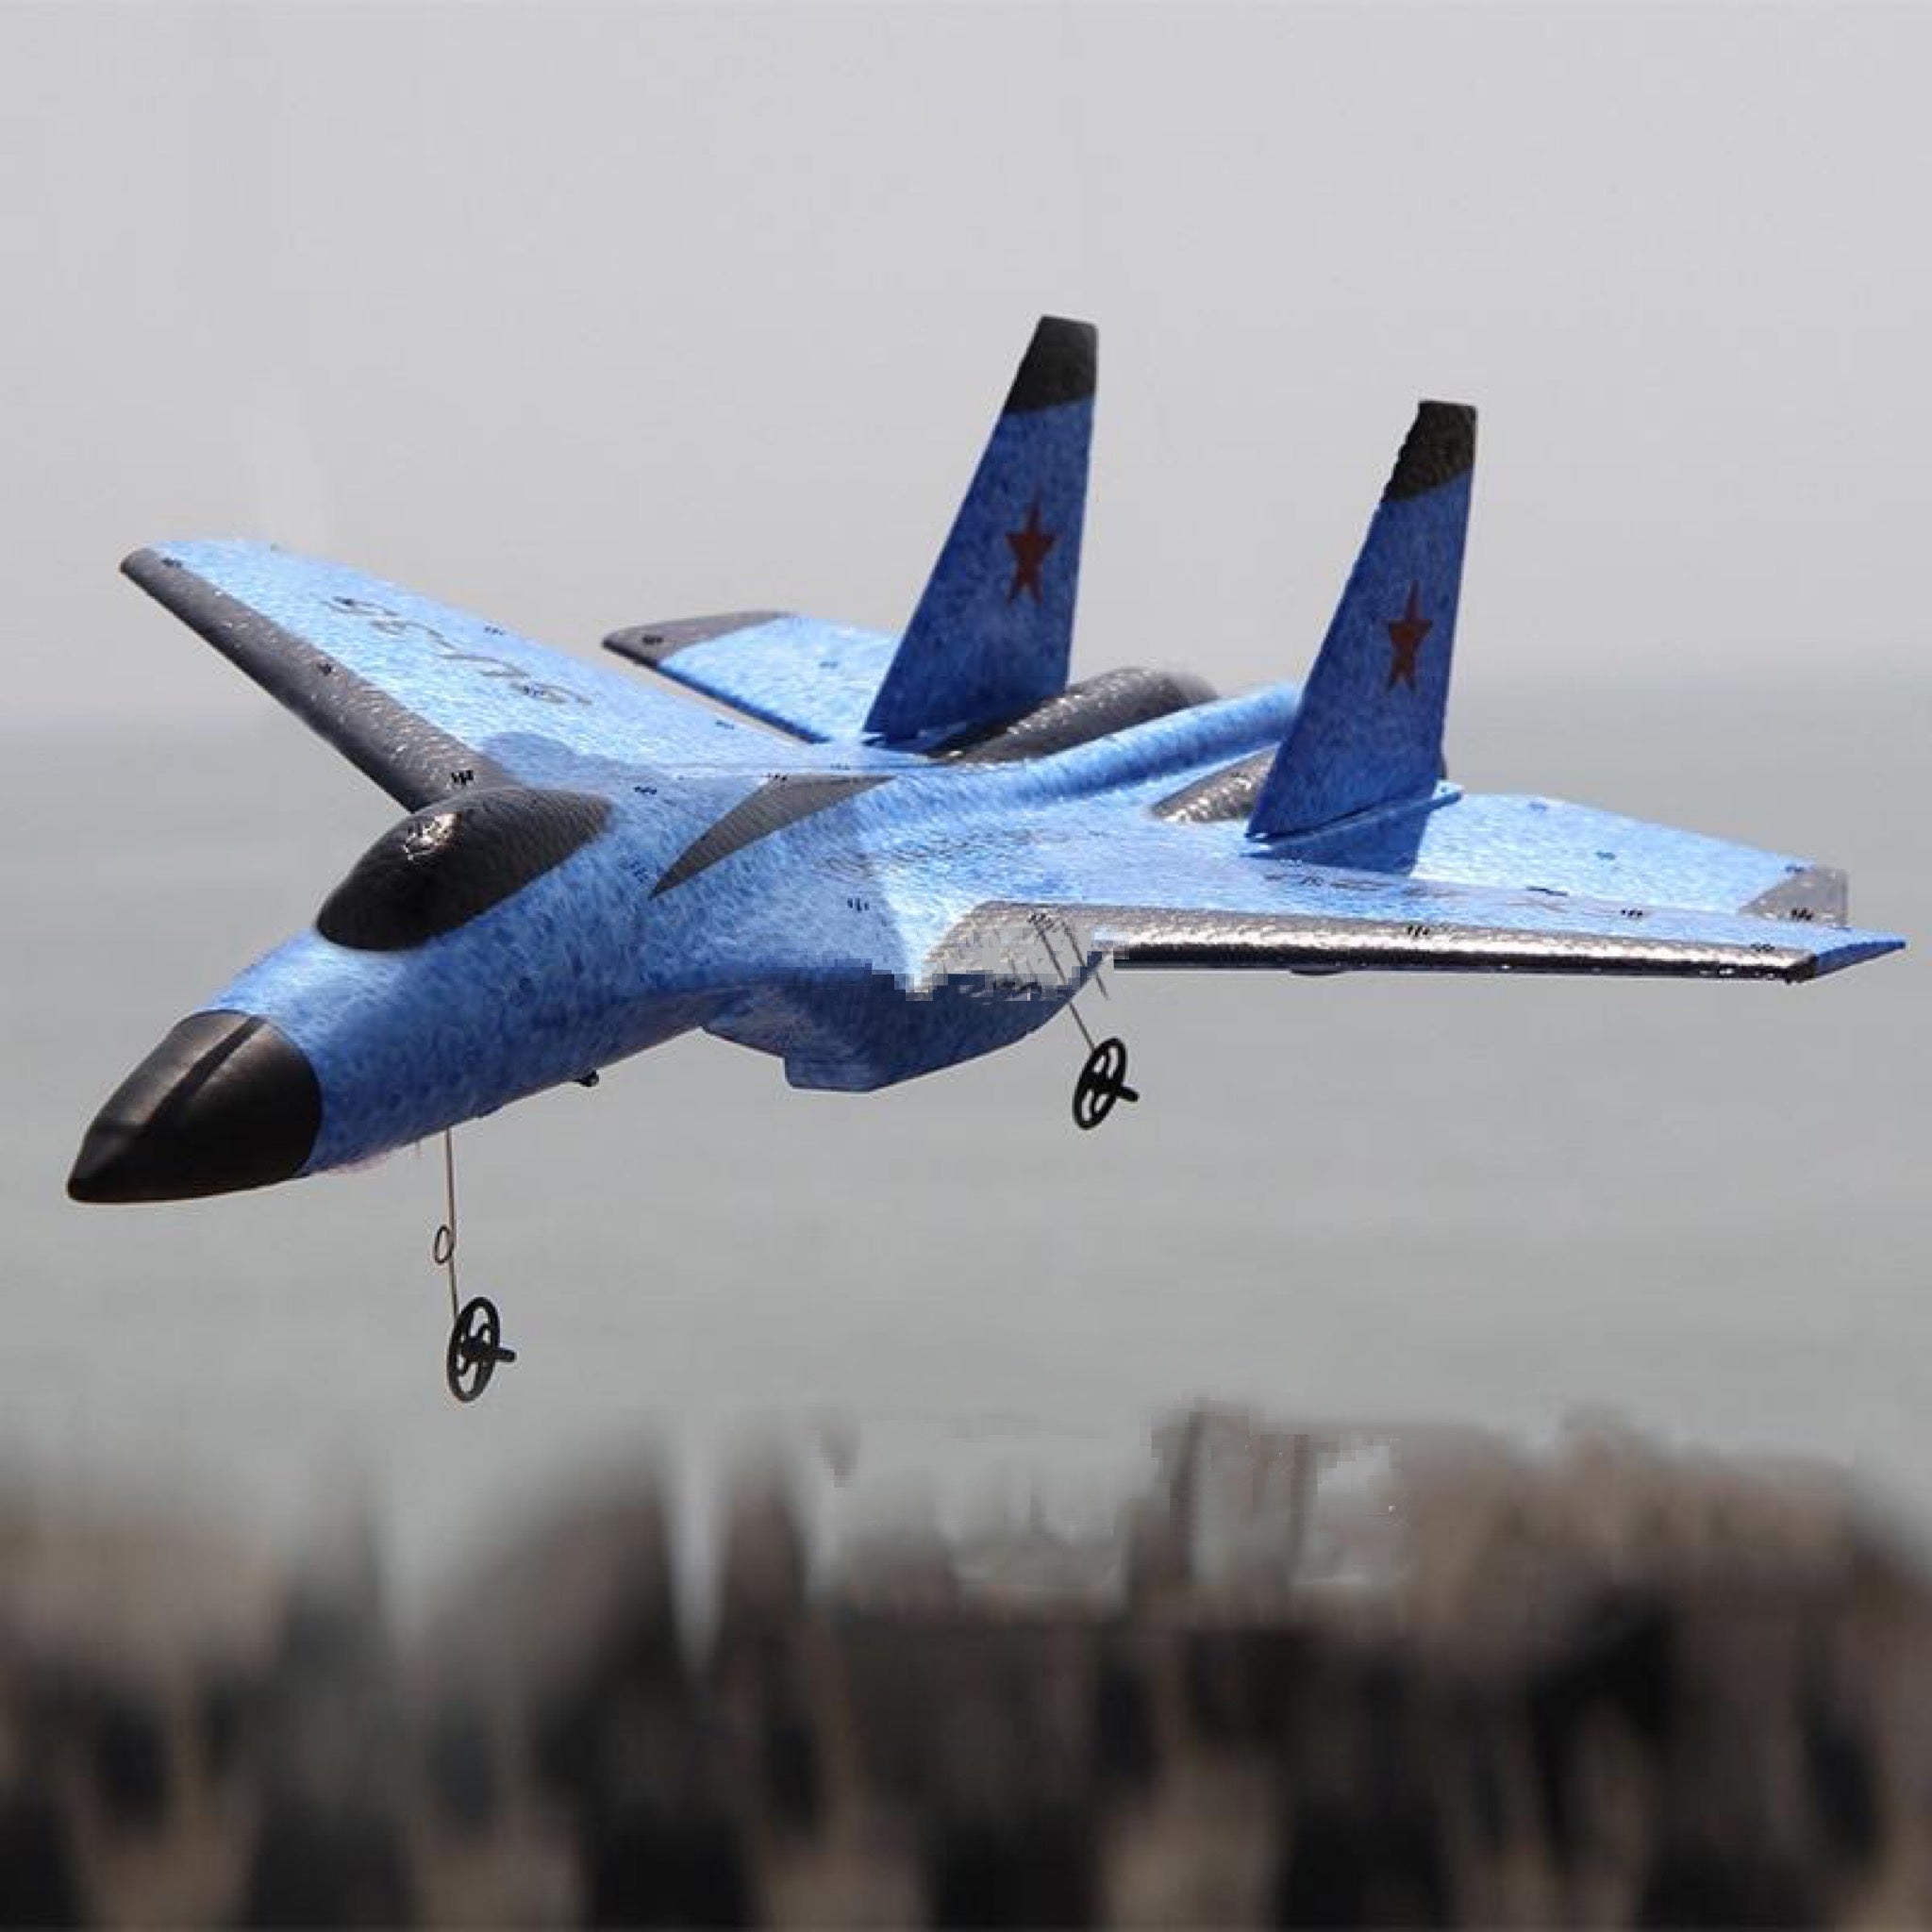 Avião 2.4g Controle Remoto Su-35 Planador Brinquedo Crianças